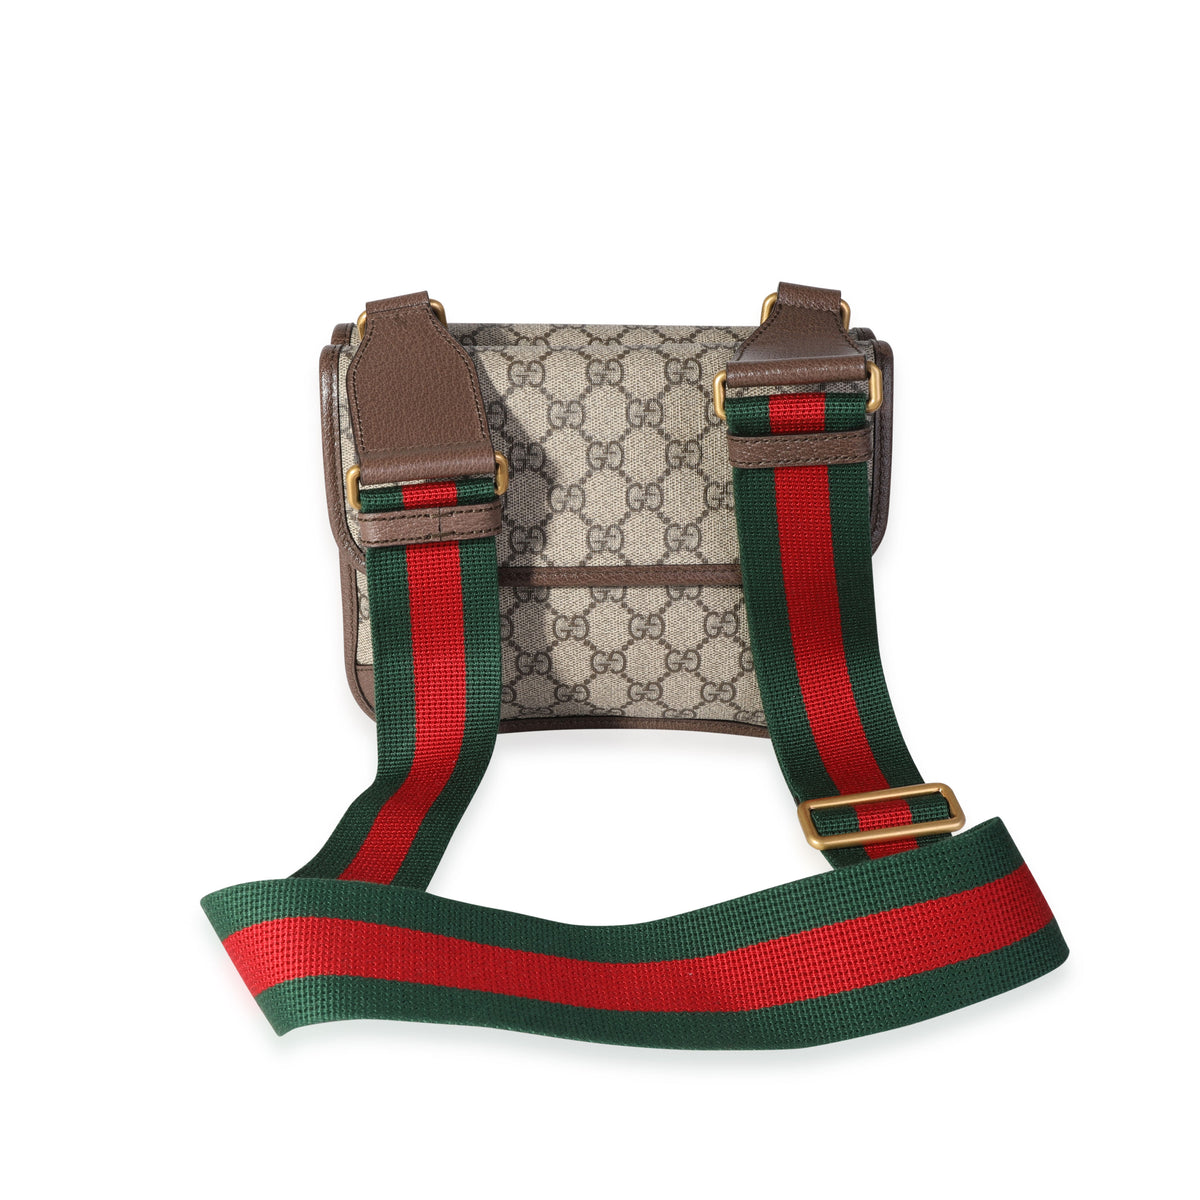 Gucci GG Supreme Small Neo Vintage Messenger Bag